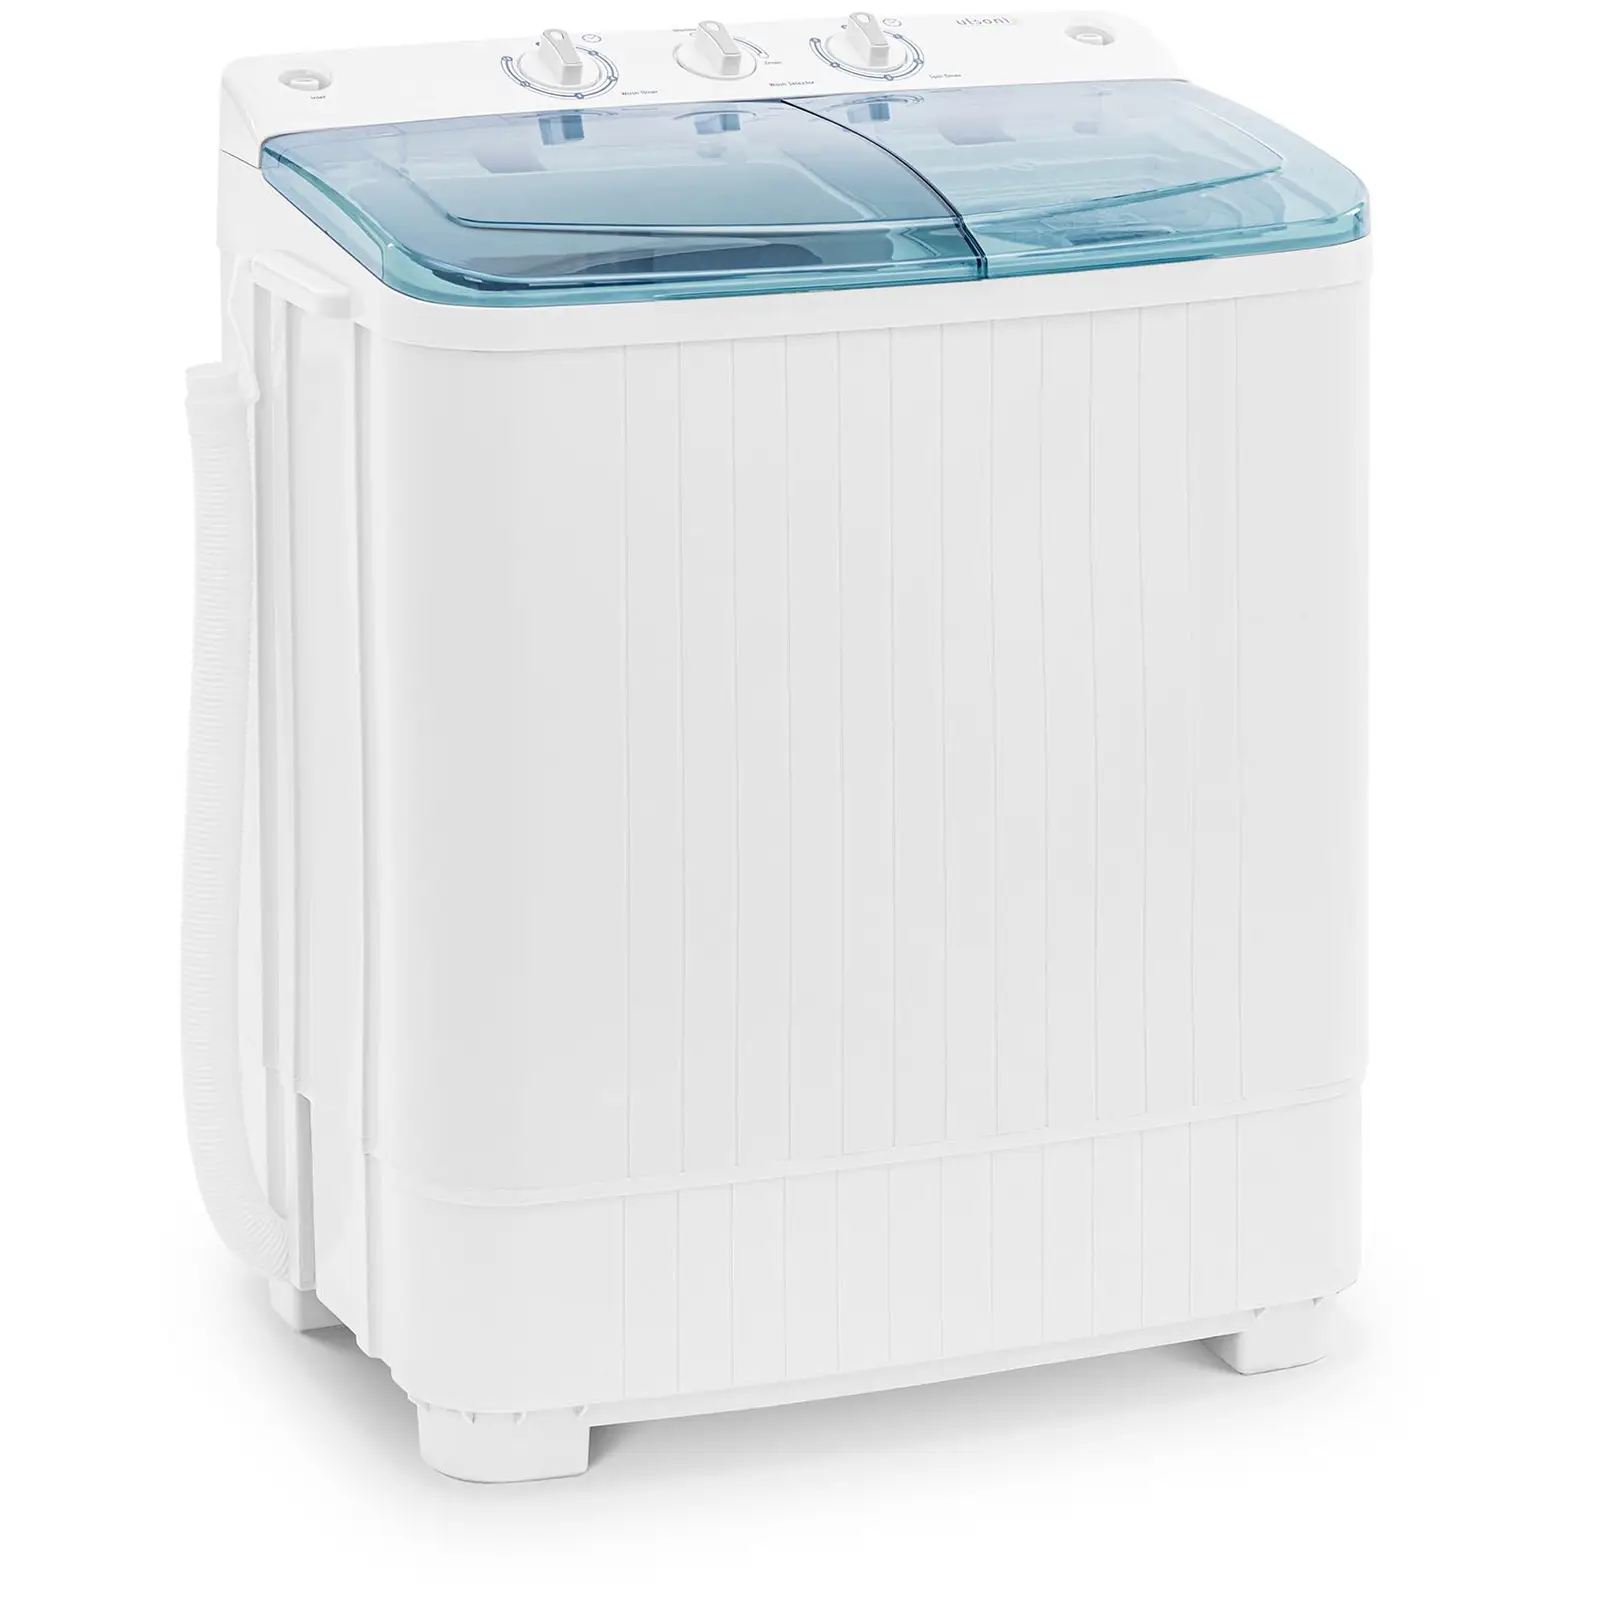 Mini lavatrice - Semiautomatica - Con centrifuga separata - 5 kg - 280 kg